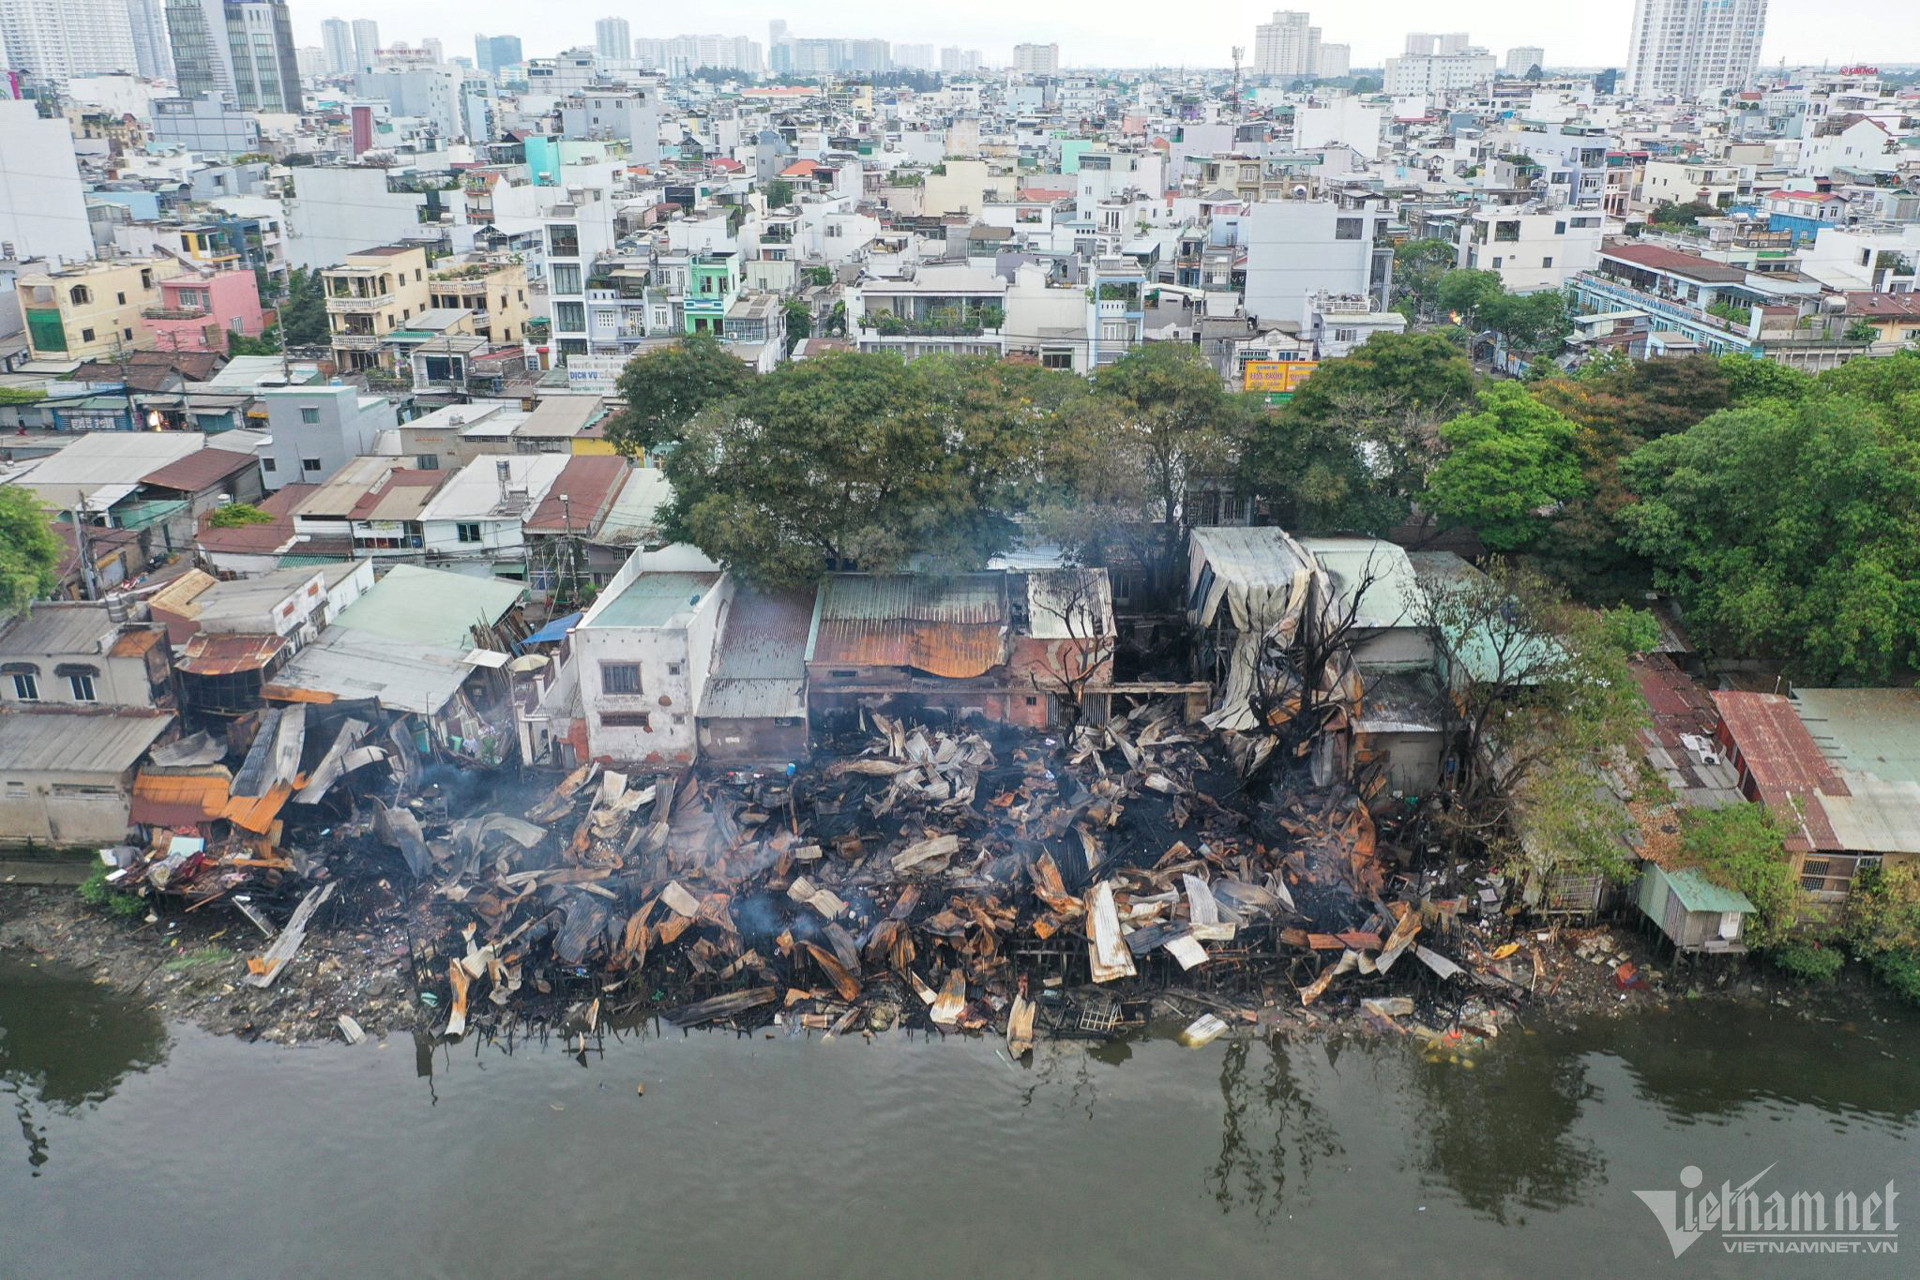  Hiện trường vụ cháy nhìn từ trên cao - Ảnh: VietNamNet